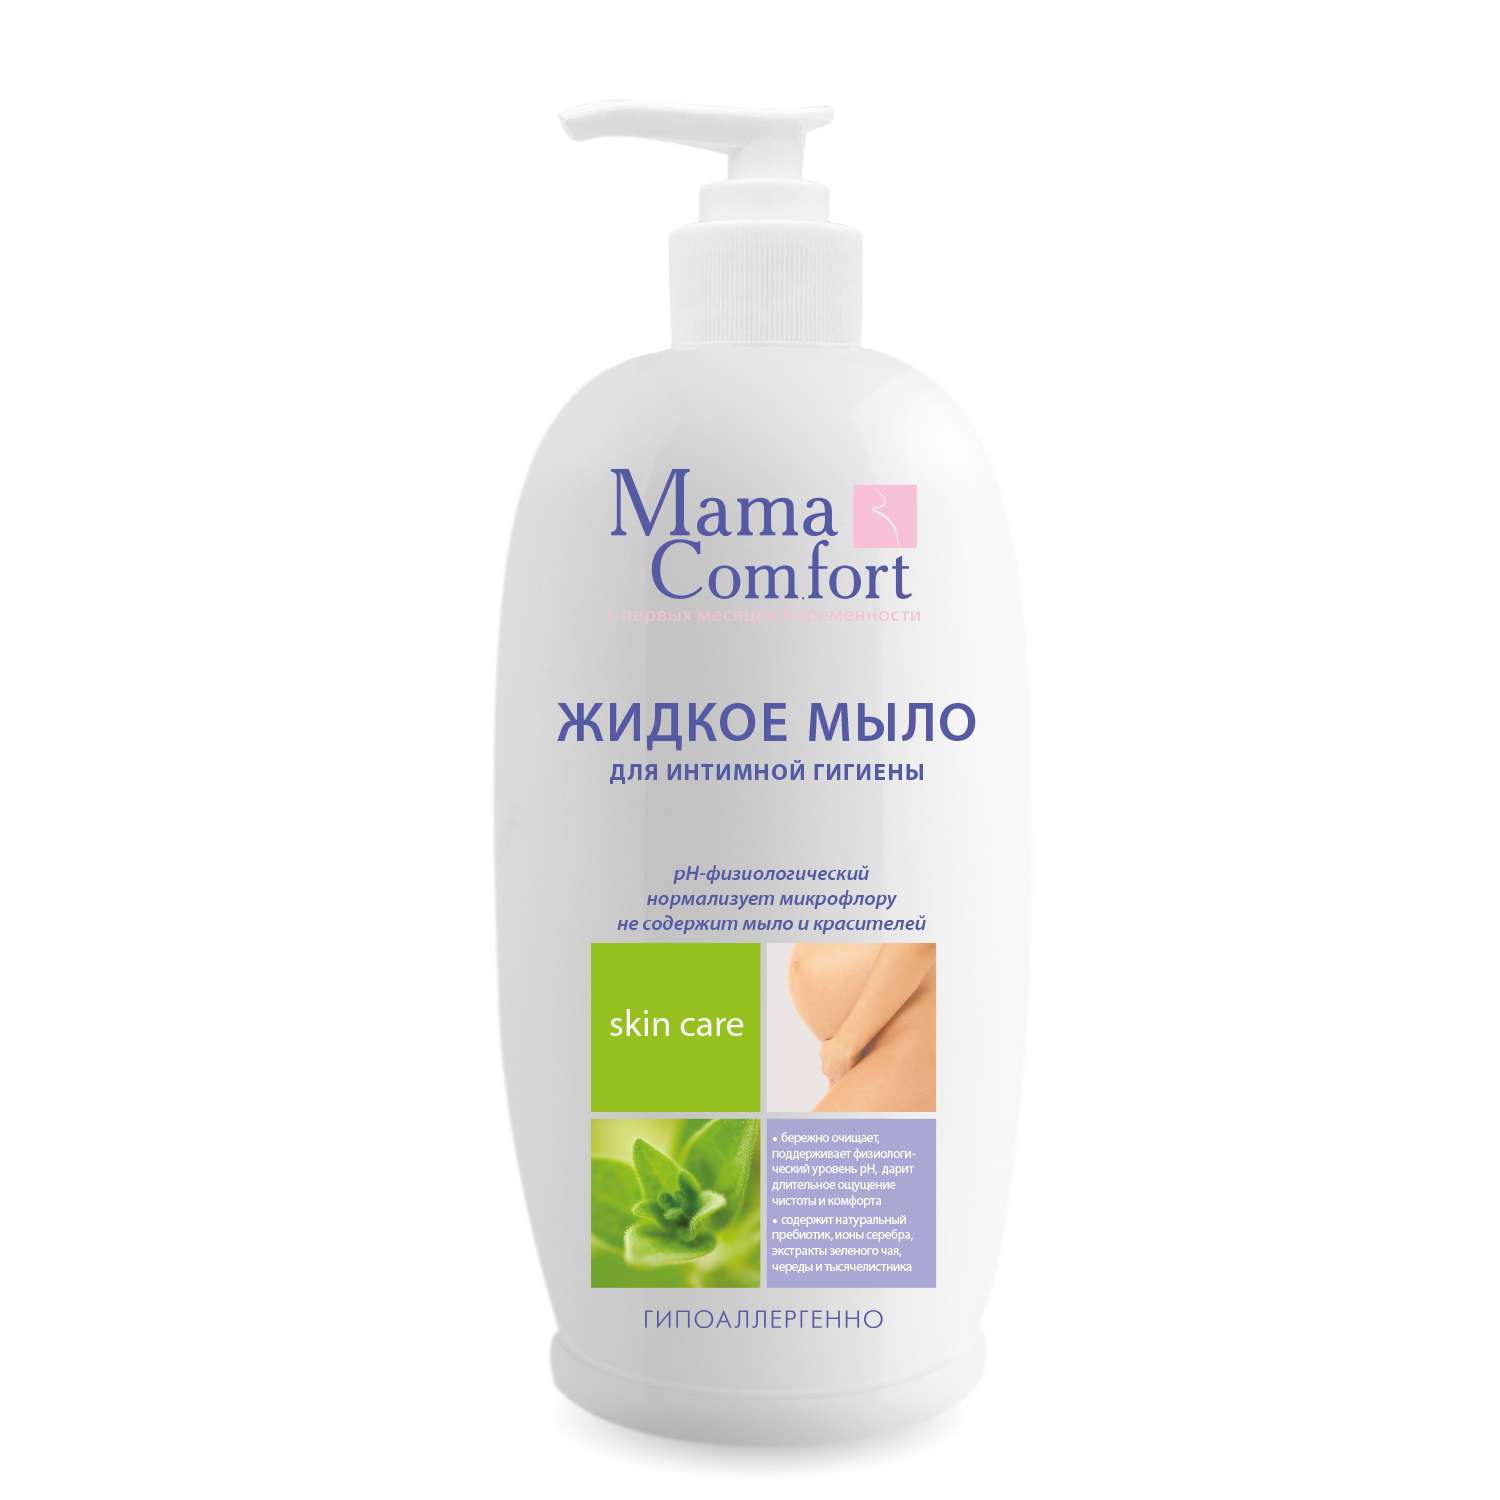 Жидкое мыло Mama Com.fort 500мл для интимной гигиены деликатный уход - фото 10